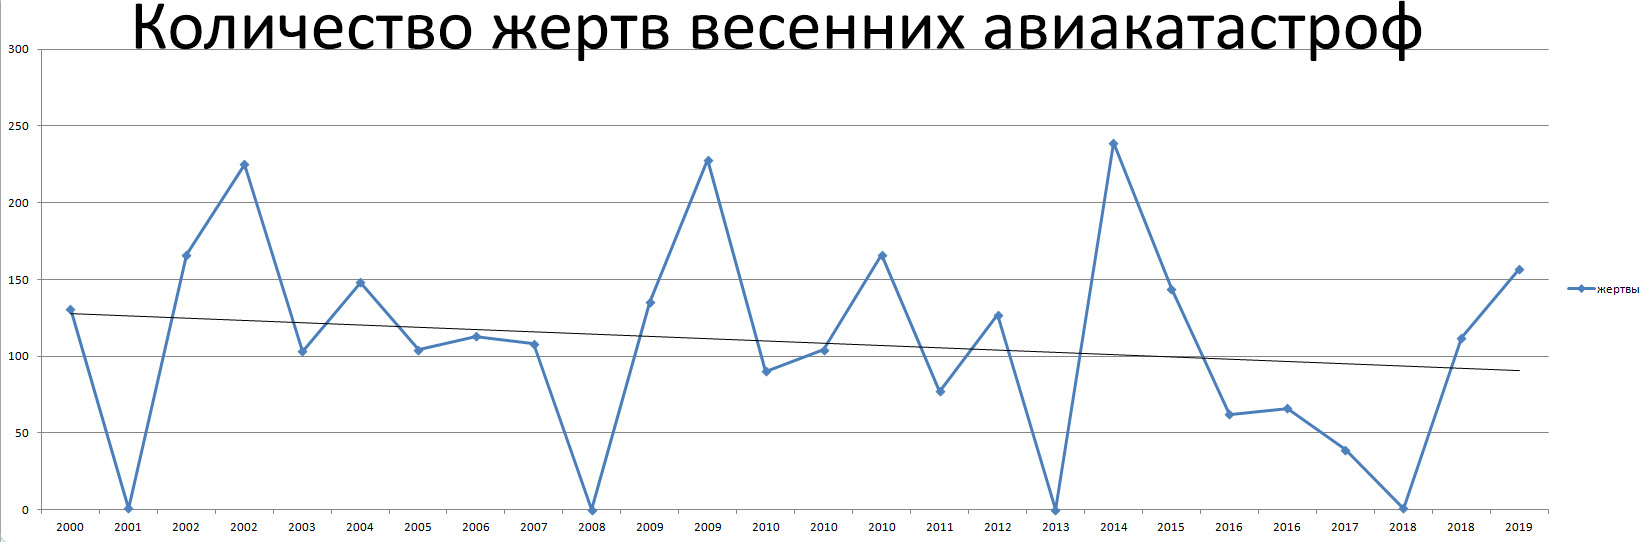 Авиакатастрофы по годам. Статистика авиакатастроф. Количество авиакатастроф по годам. Причины авиакатастроф диаграмма. Число авиакатастроф в России.